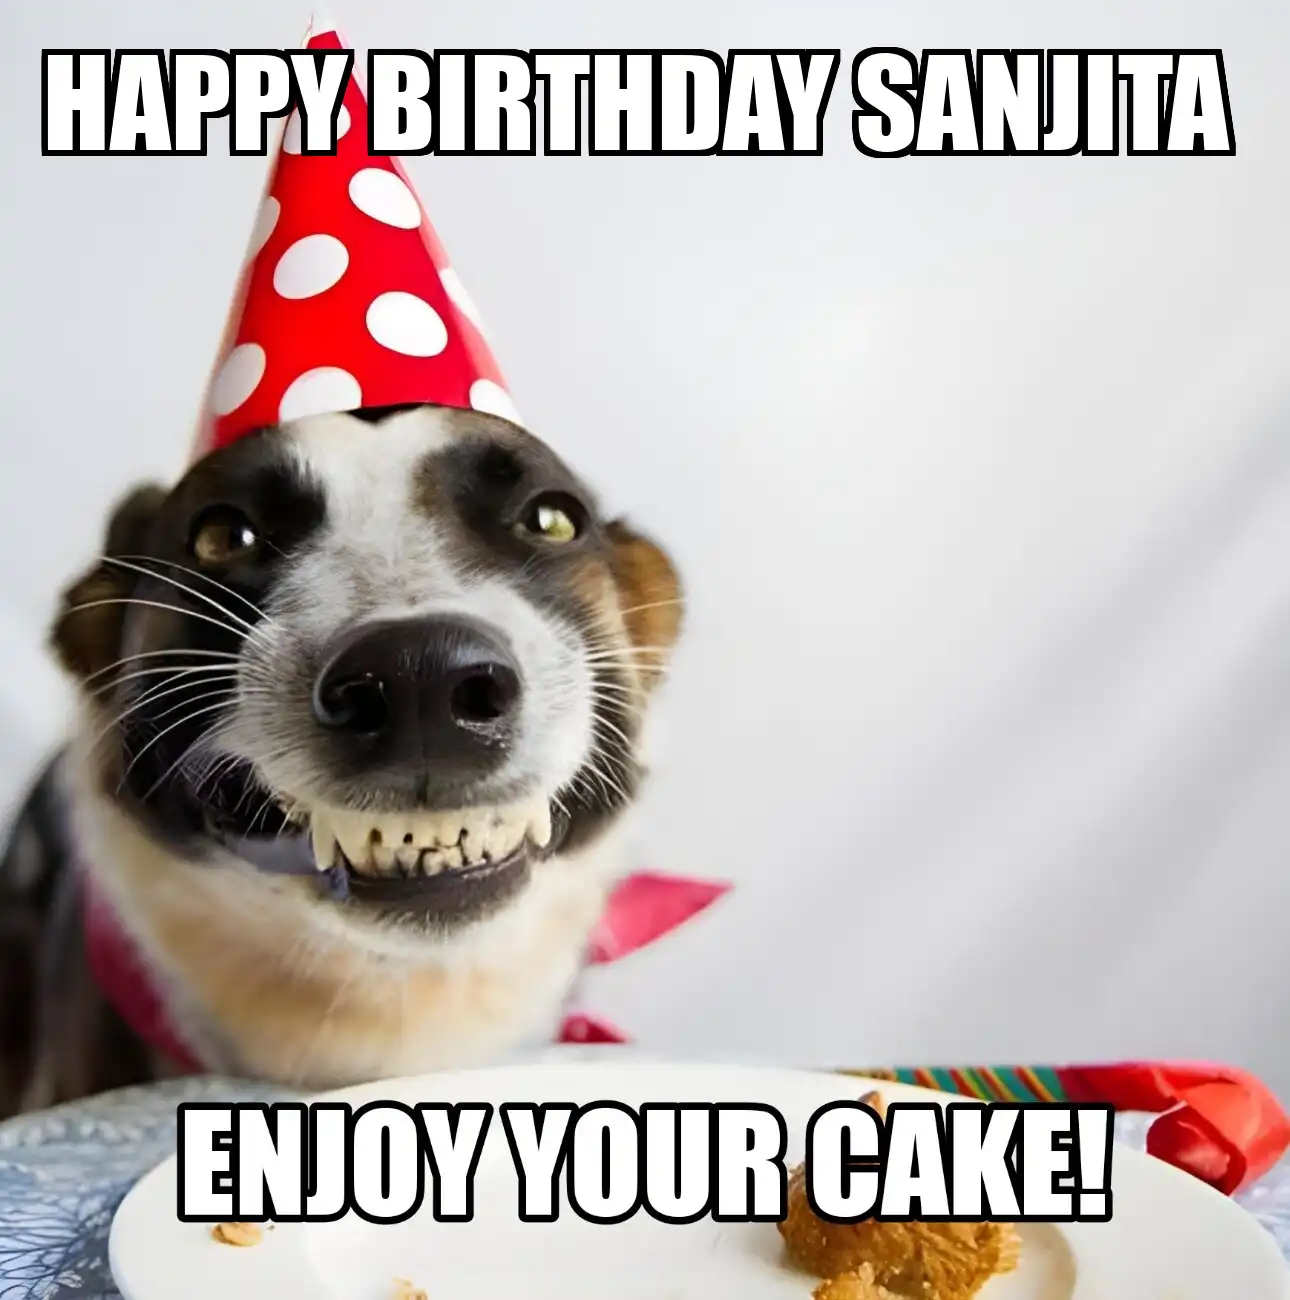 Happy Birthday Sanjita Enjoy Your Cake Dog Meme